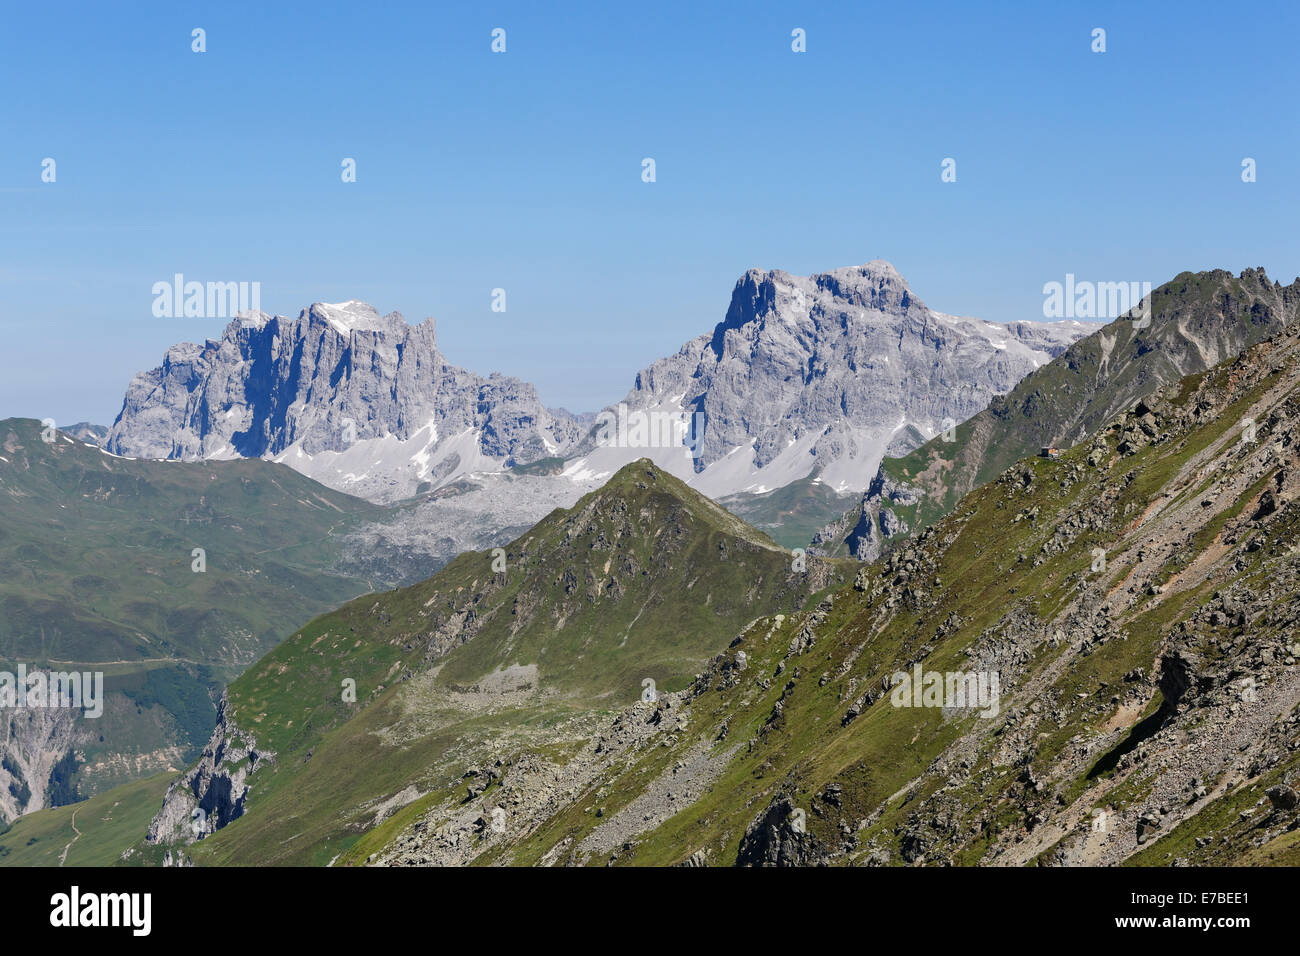 Berge-Drusenfluh, Drei Türme und Sulzfluh, Rätikon Gebirge, Graubünden oder Graubünden, Schweiz, Blick von der Stockfoto